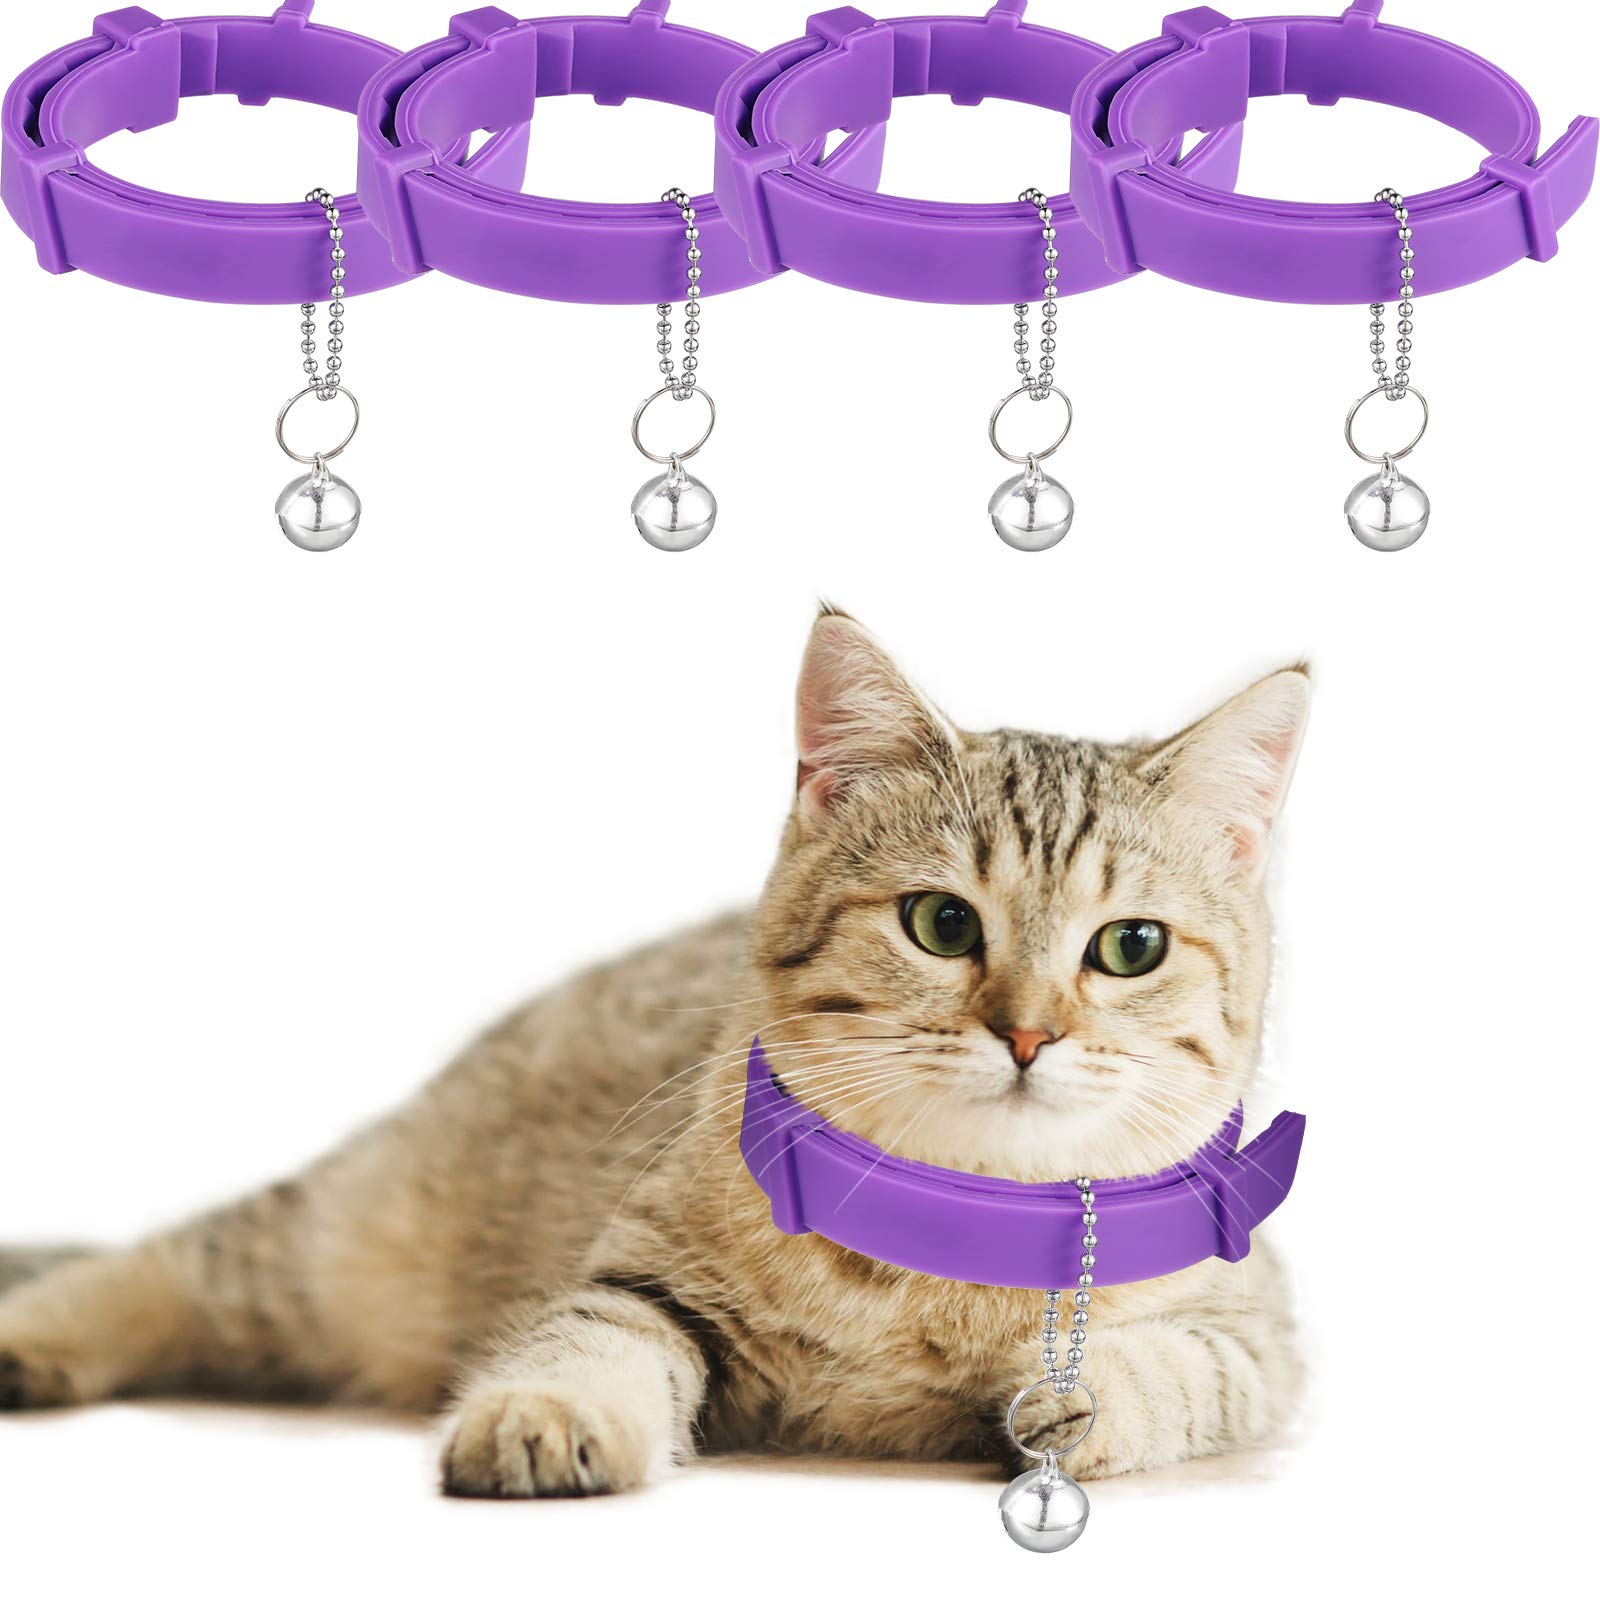 Weewooday 4 Pieces Cat Calming Collars Adjustable